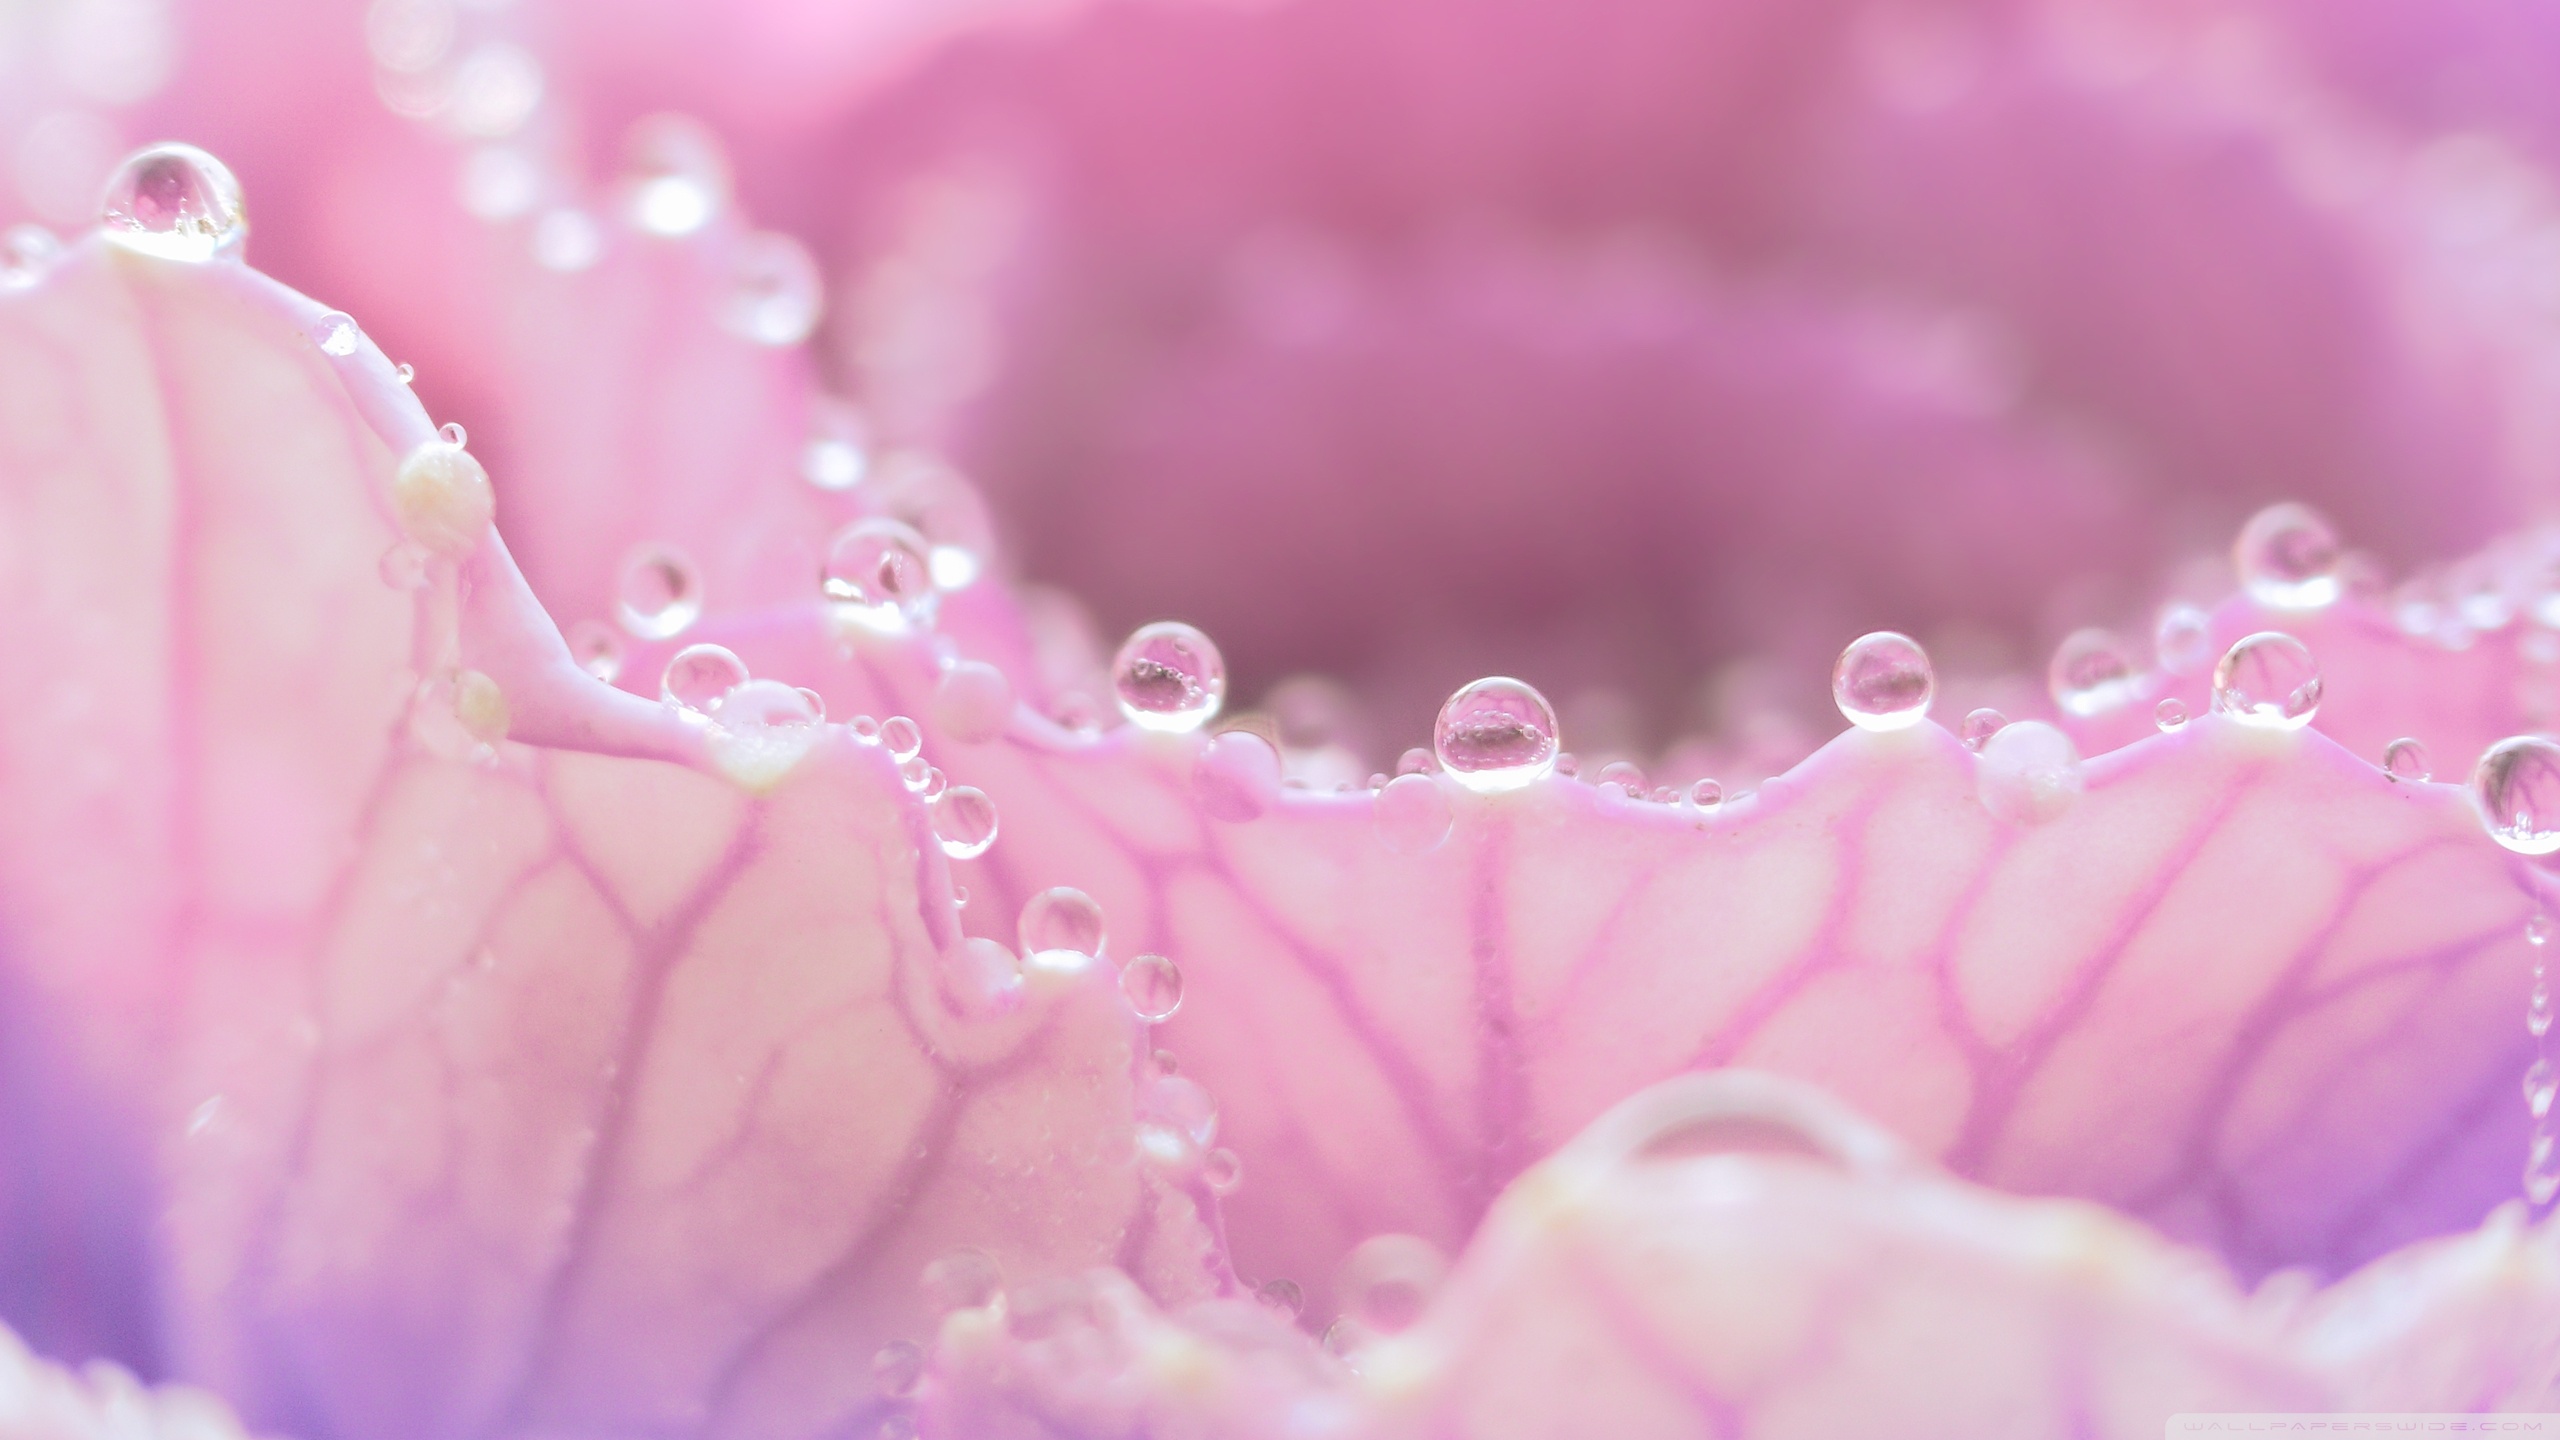 Dew Drops On Pink Flowers - HD Wallpaper 